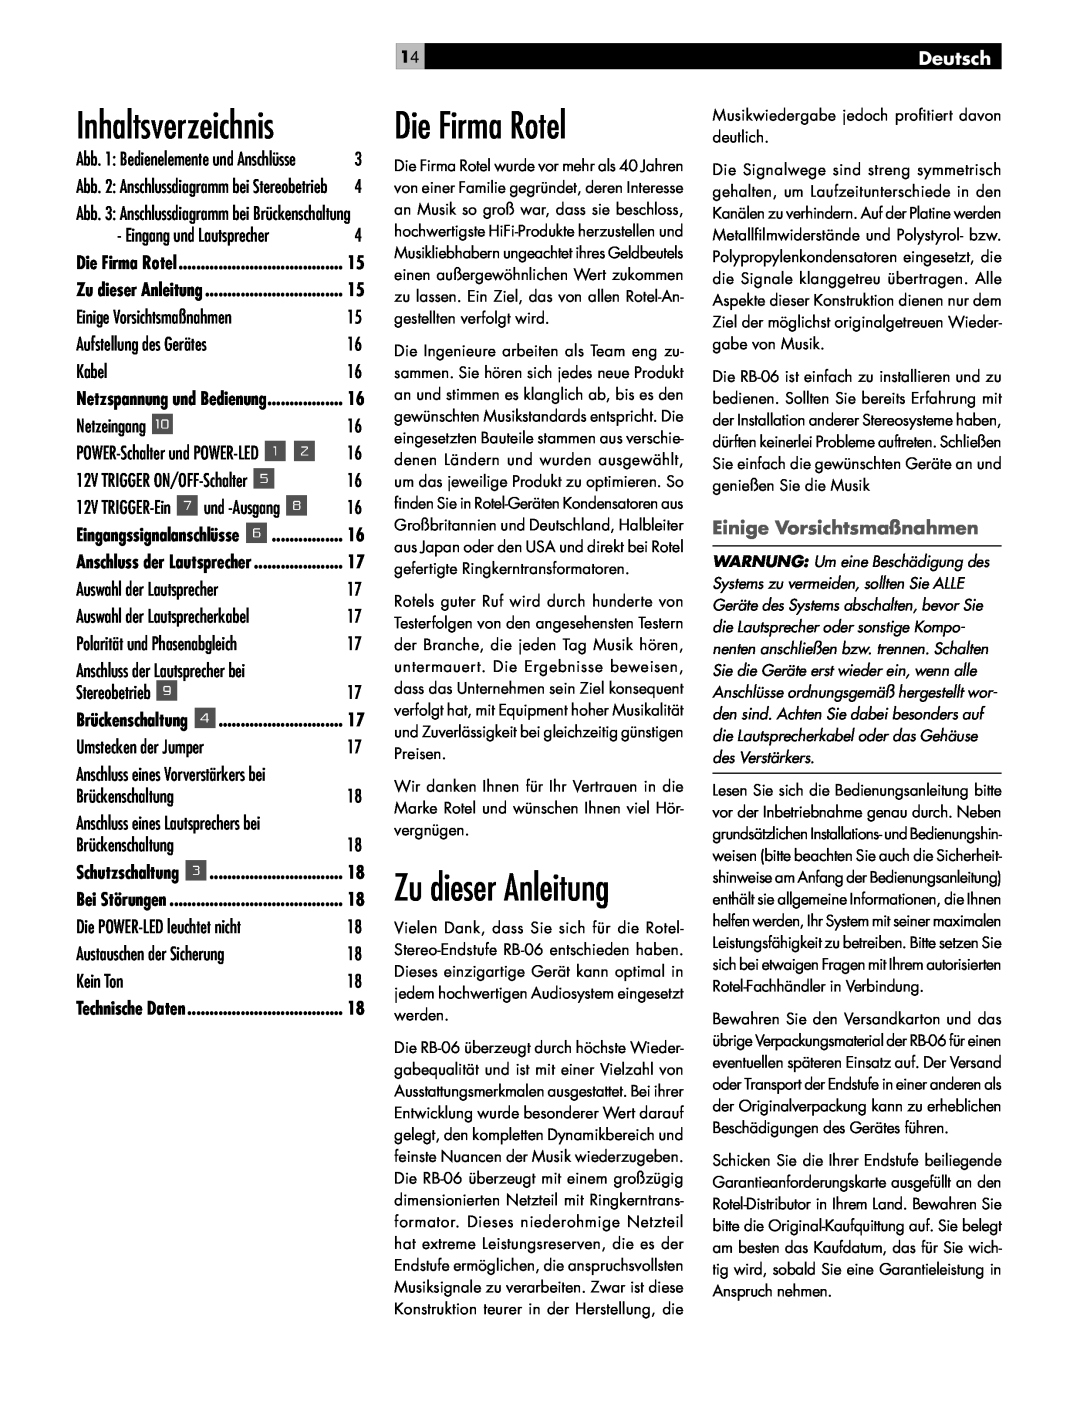 Rotel RB-06 owner manual Die Firma Rotel, Deutsch, Einige Vorsichtsmaßnahmen, Zu dieser Anleitung 